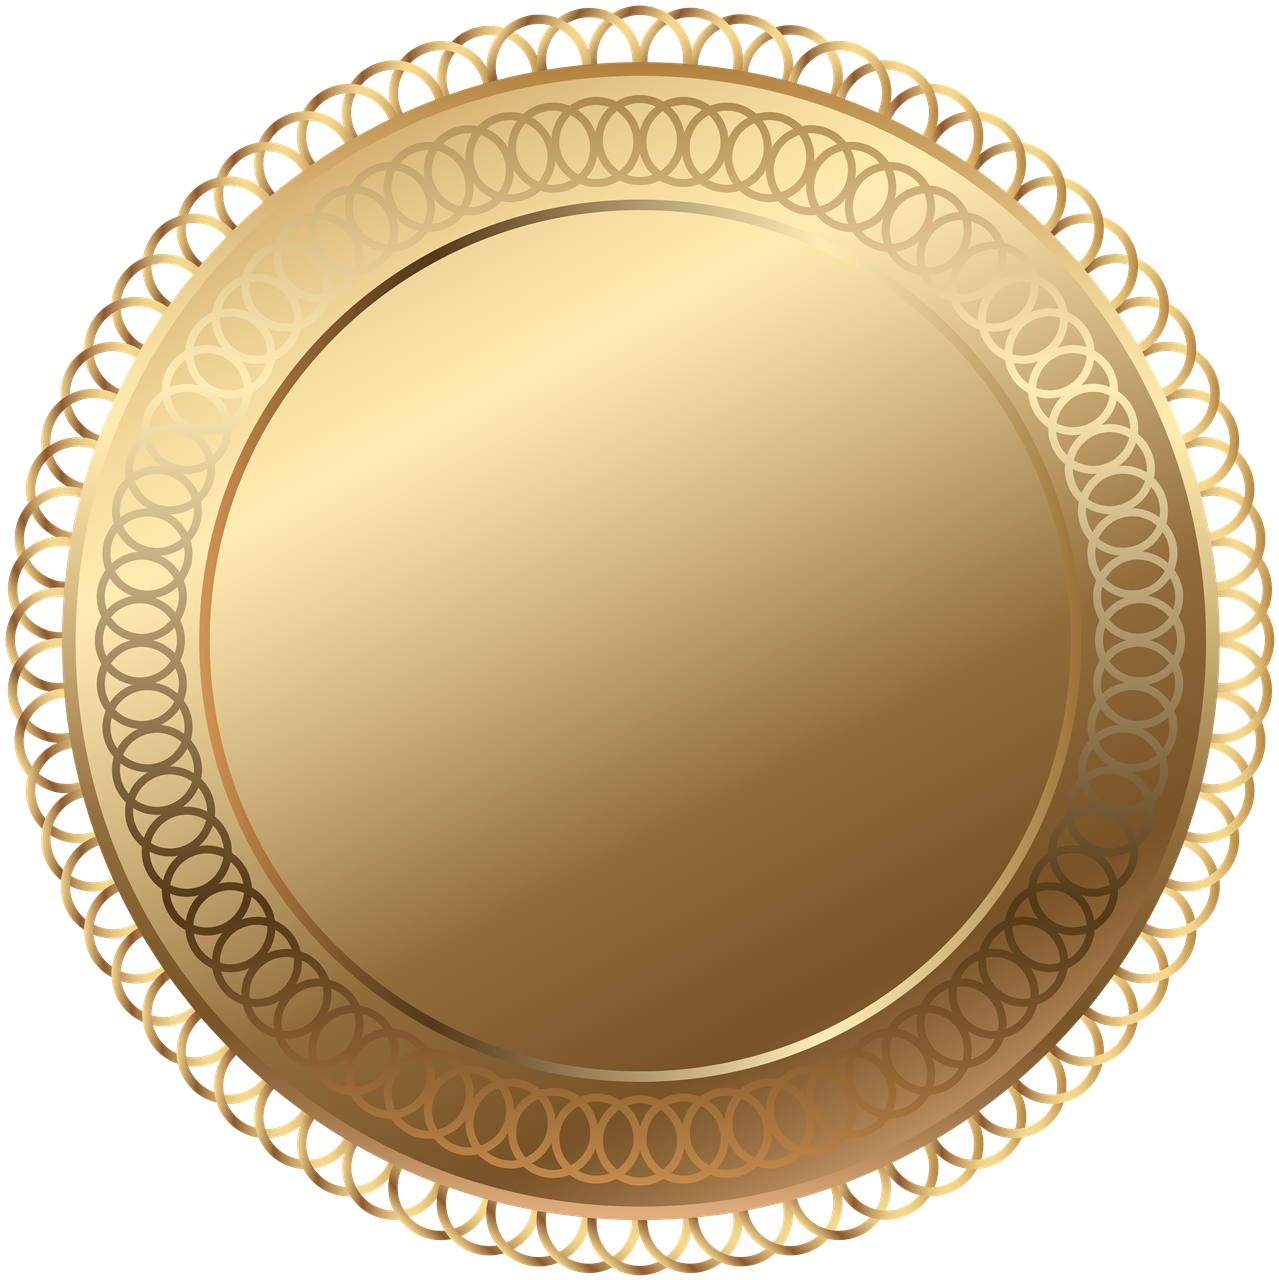 Golden Badge Transparent Image